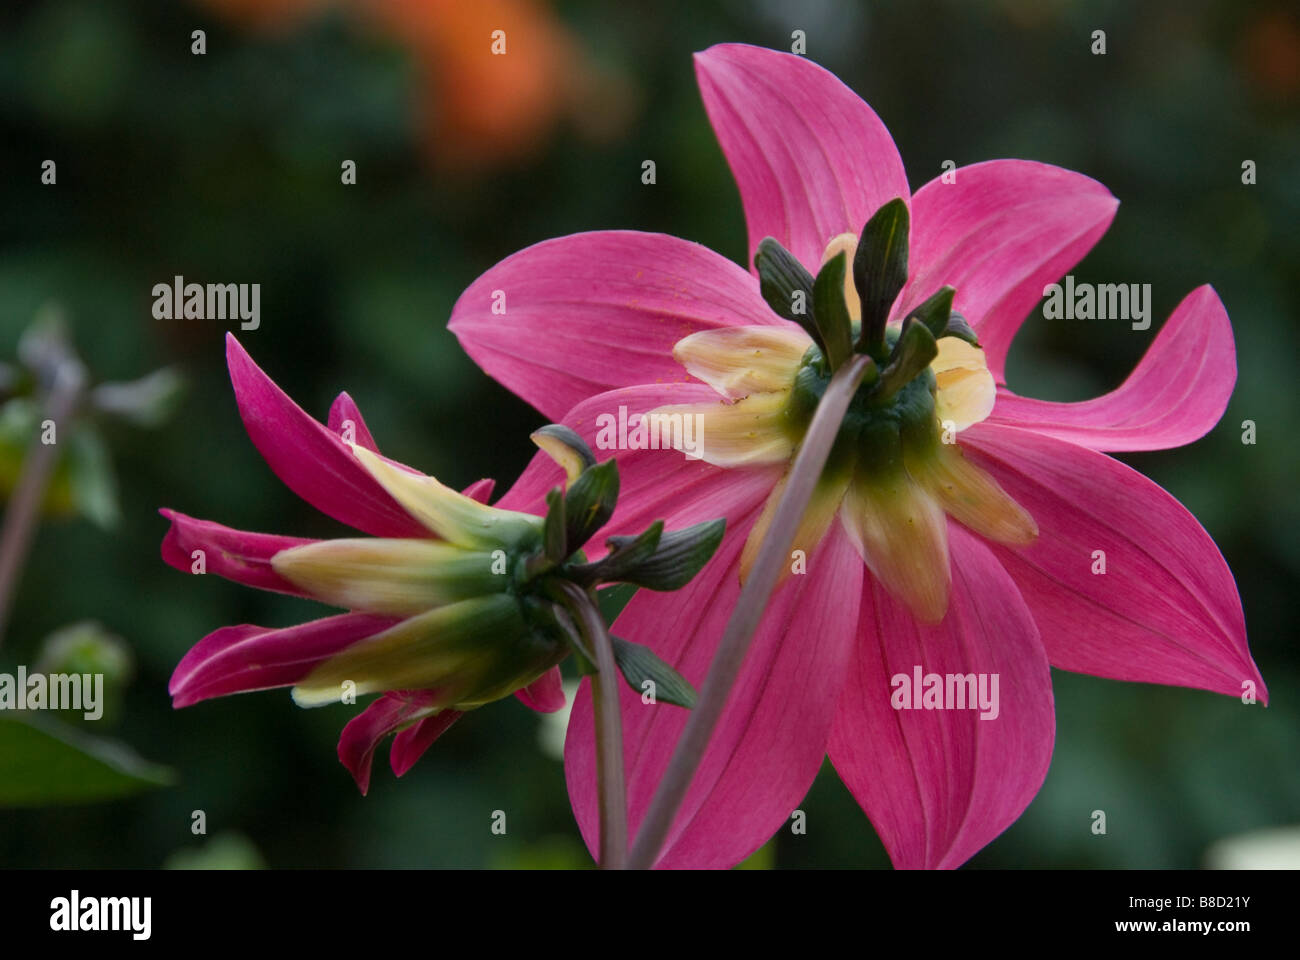 Stock Foto von Hintern rosa Dahlie Blumen zeigen Stiele Stockfoto